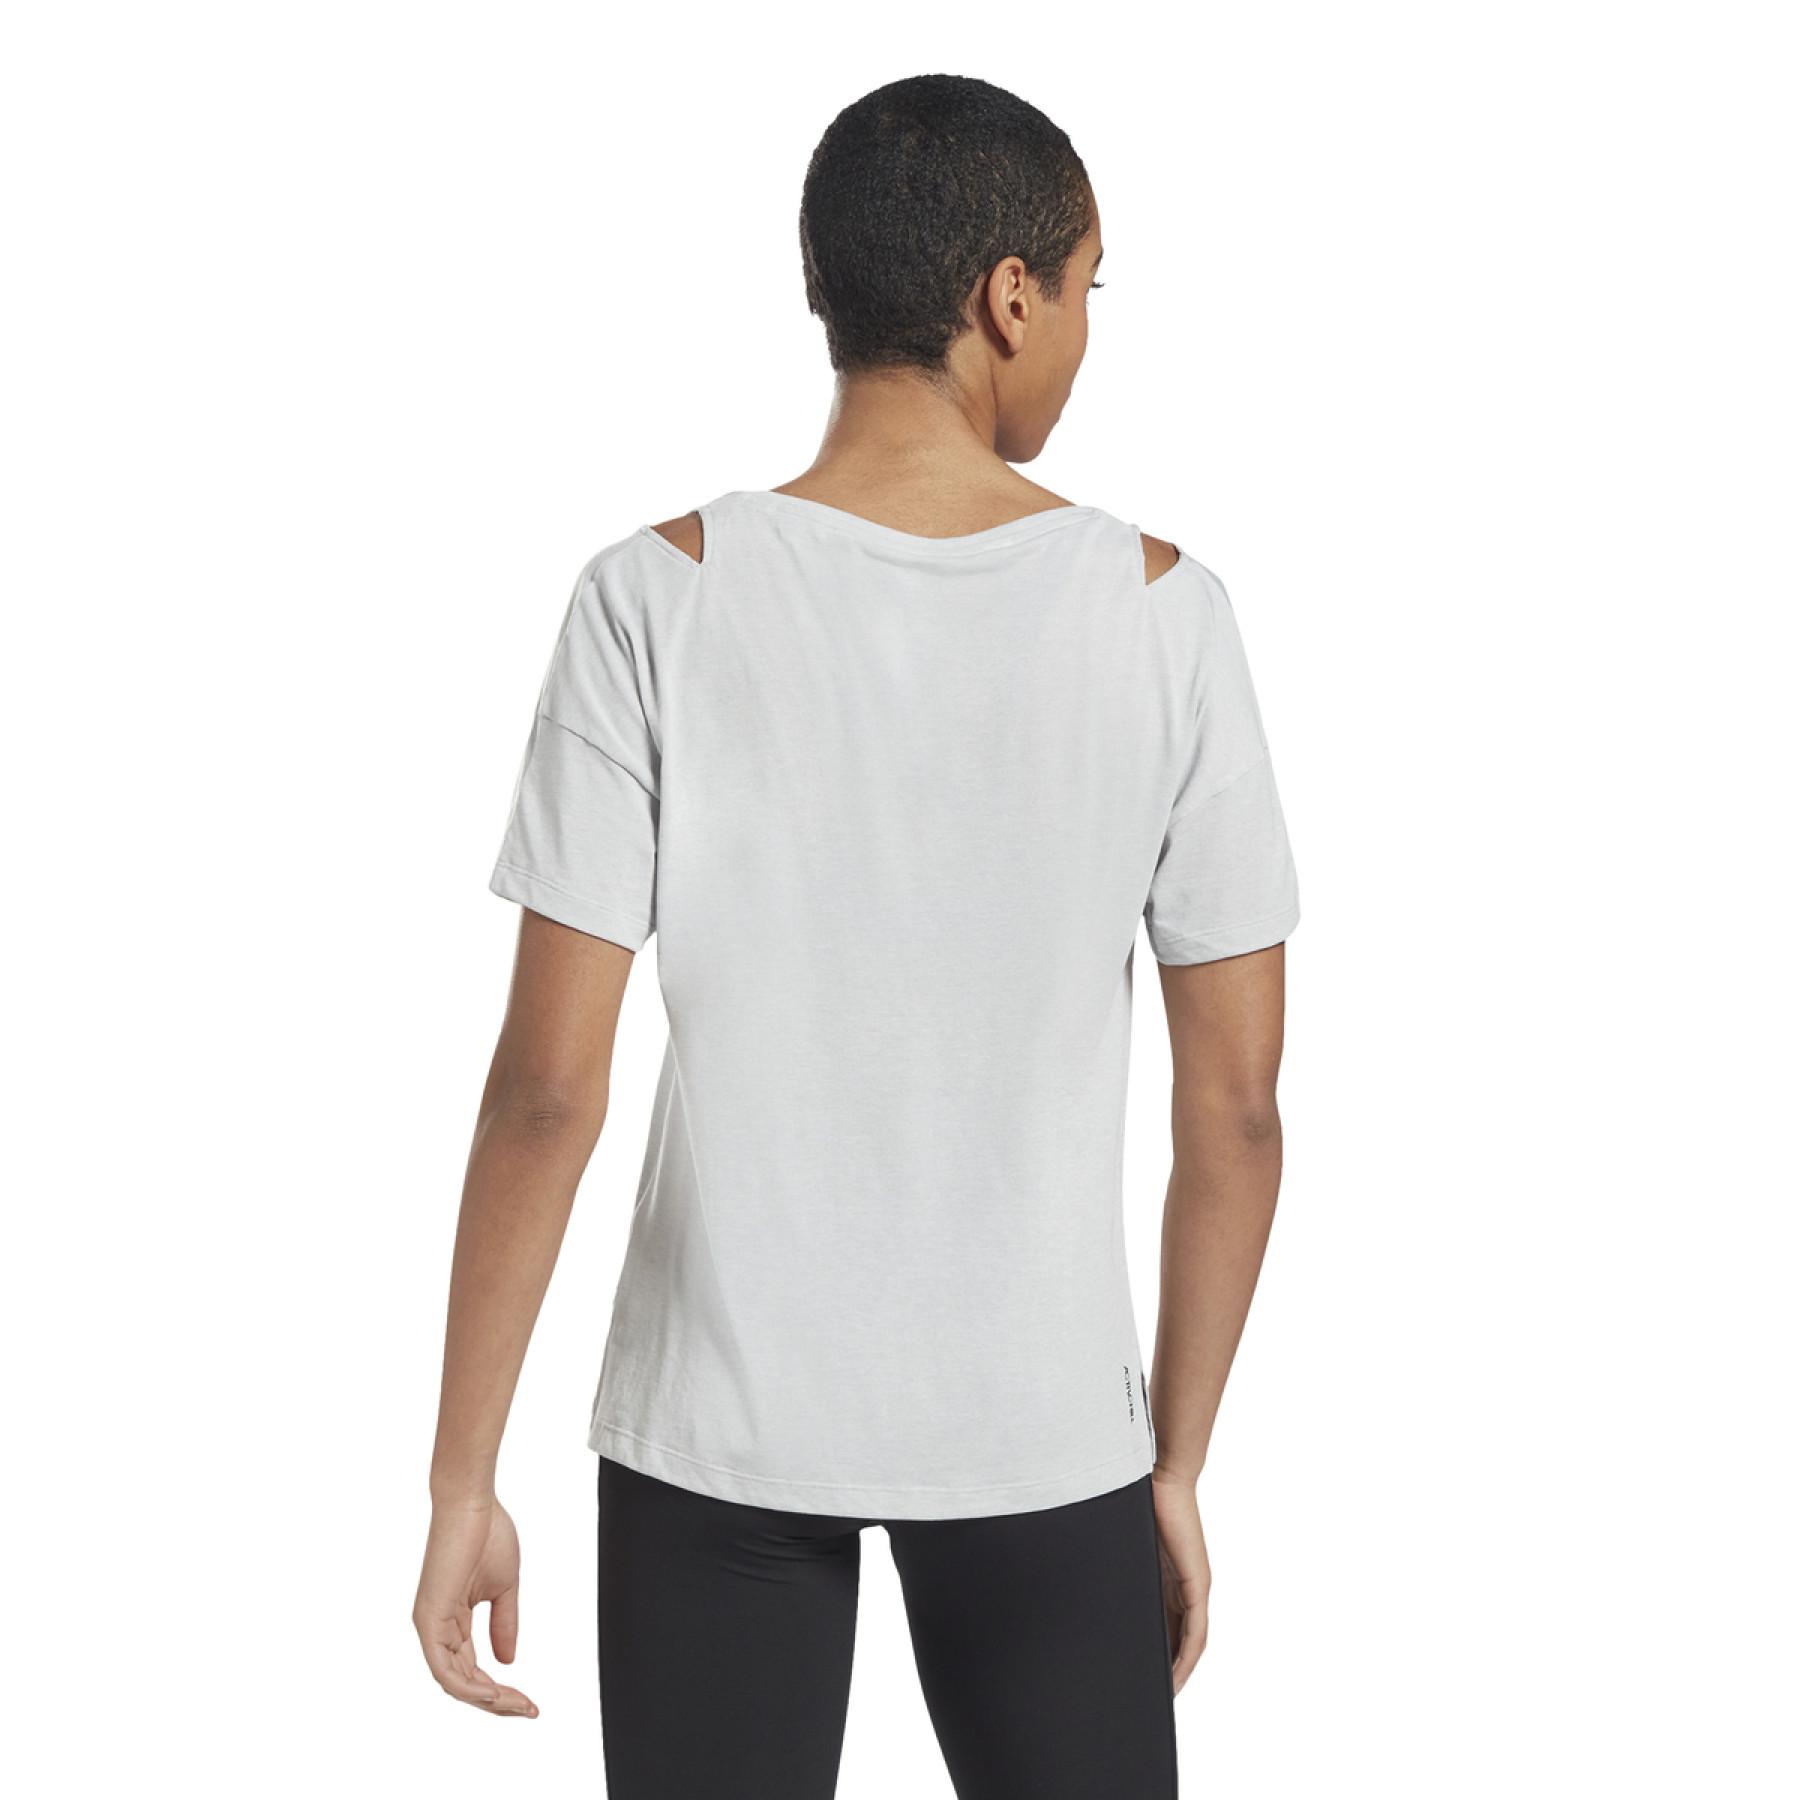 Dames-T-shirt Reebok Activchill+Cotton